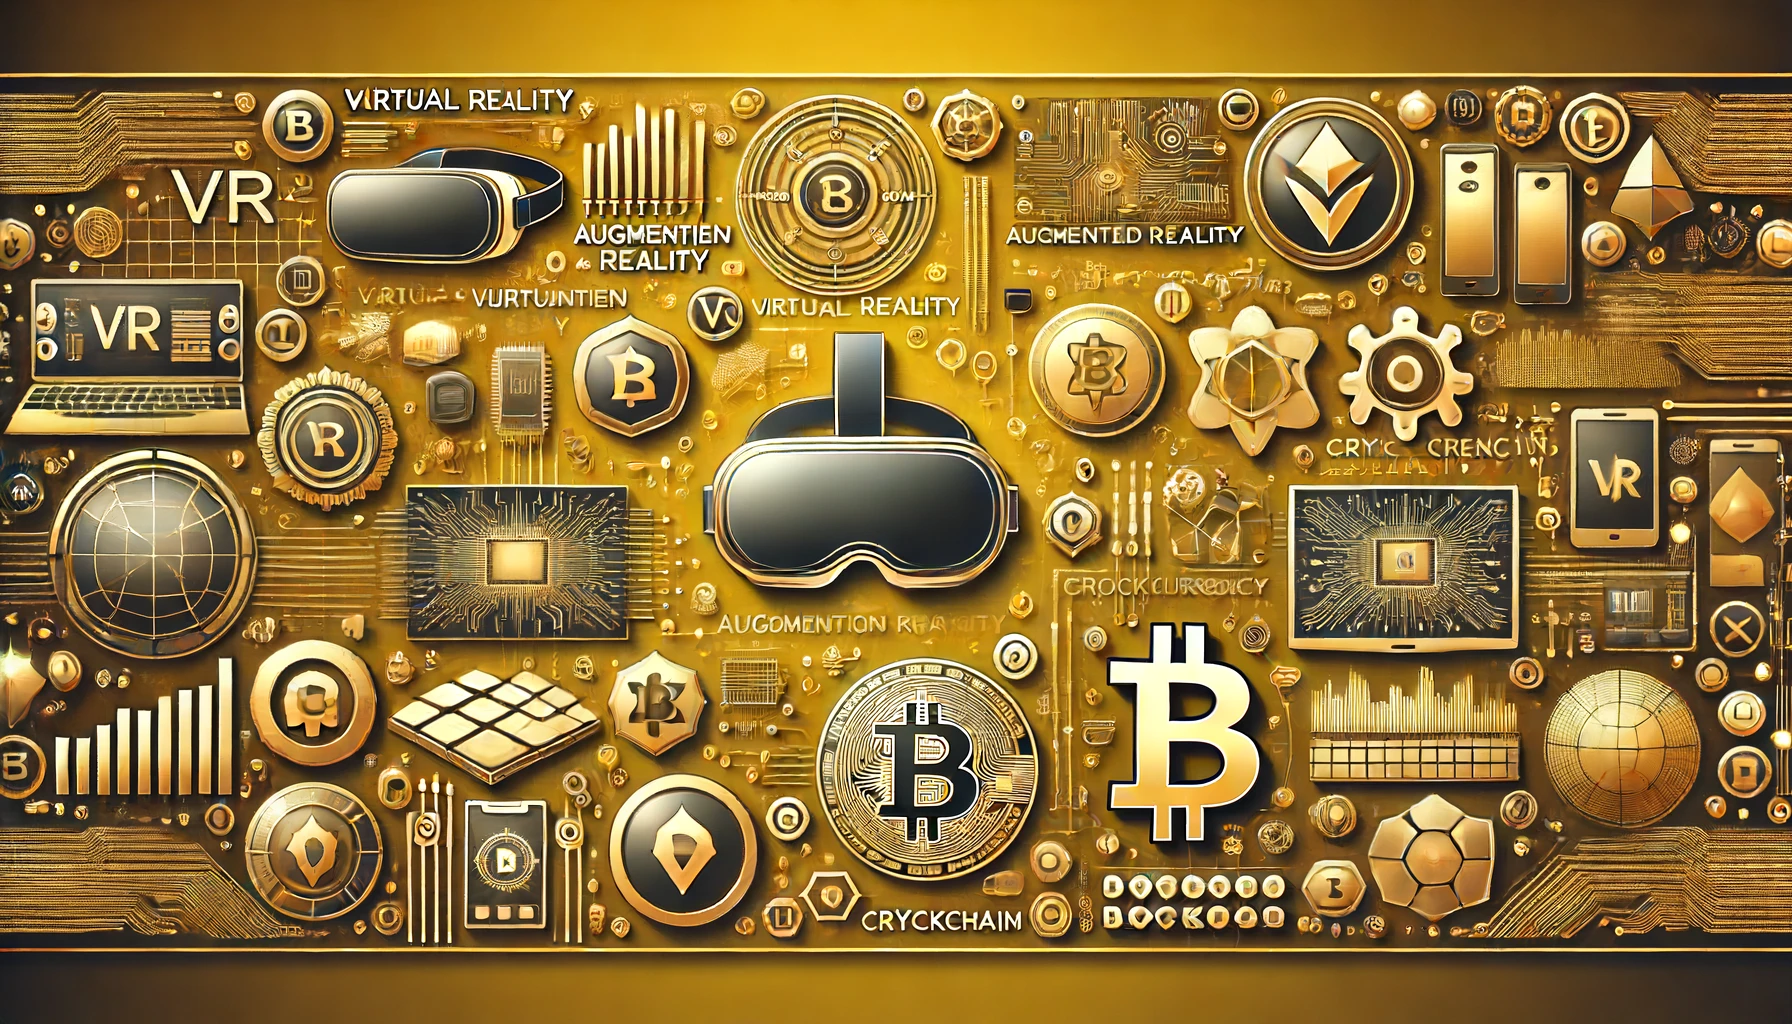 金色の背景にVR、AR、仮想通貨を象徴する要素を配置した画像